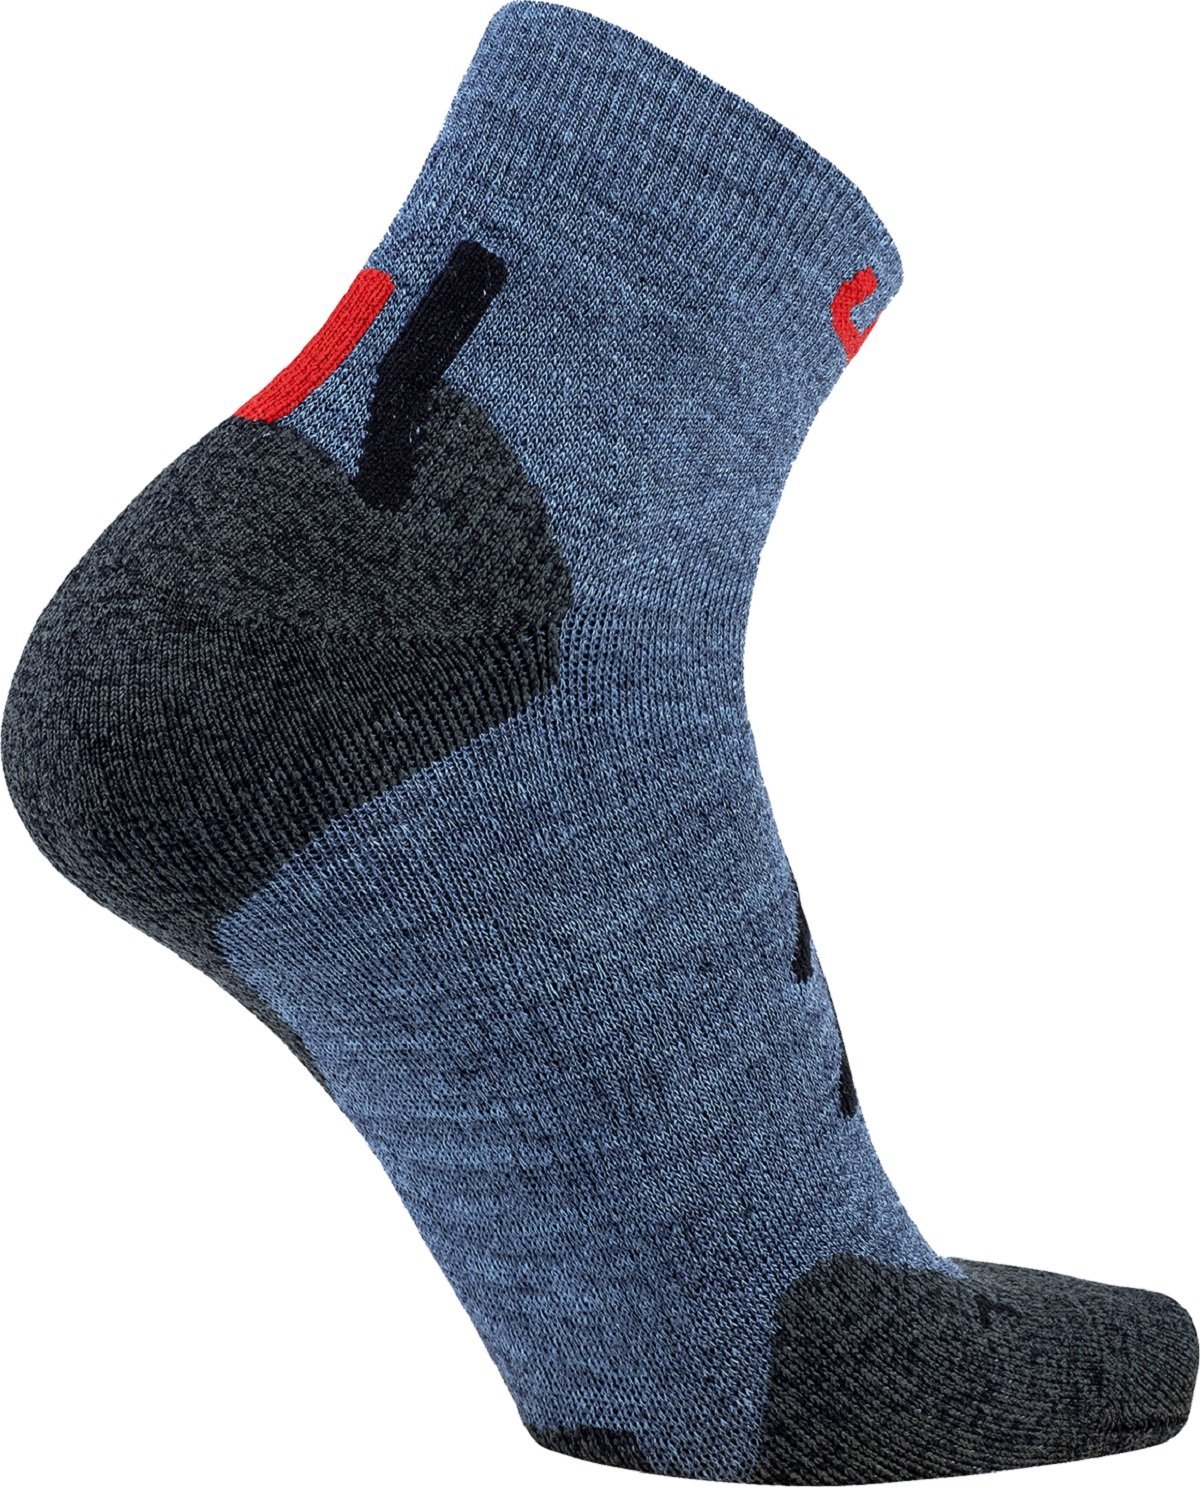 Ponožky UYN Trekking Approach Merino Low Cut M - modrá/sivá/červená